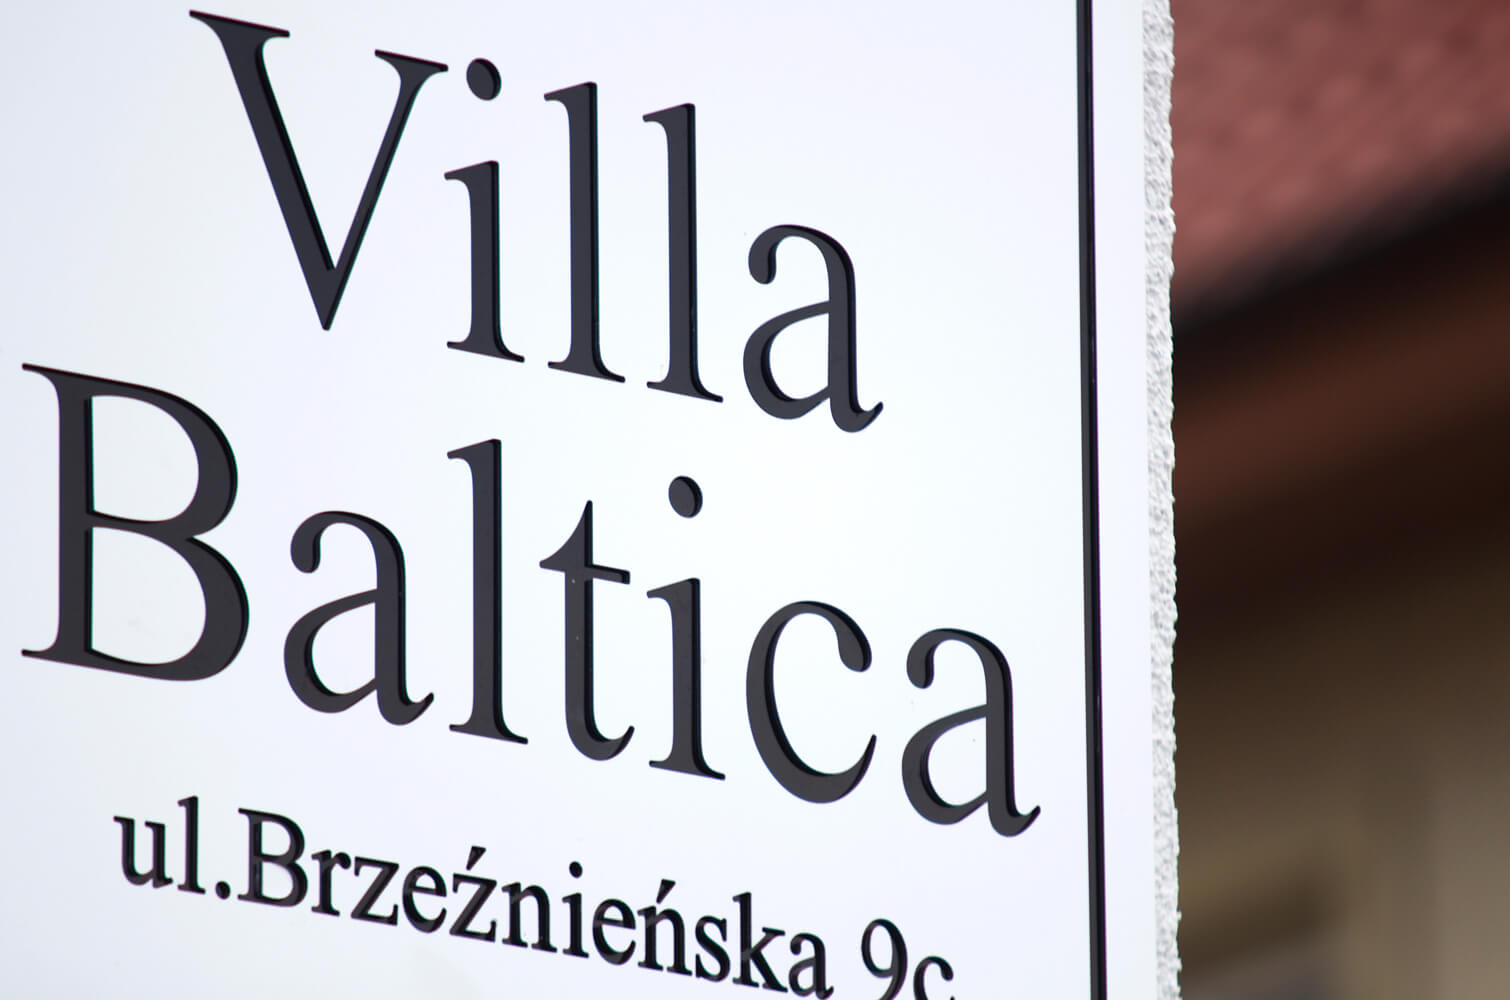 Villa Baltica - Villa Baltica - Bedrijfsbord op dibond coffer in mat wit